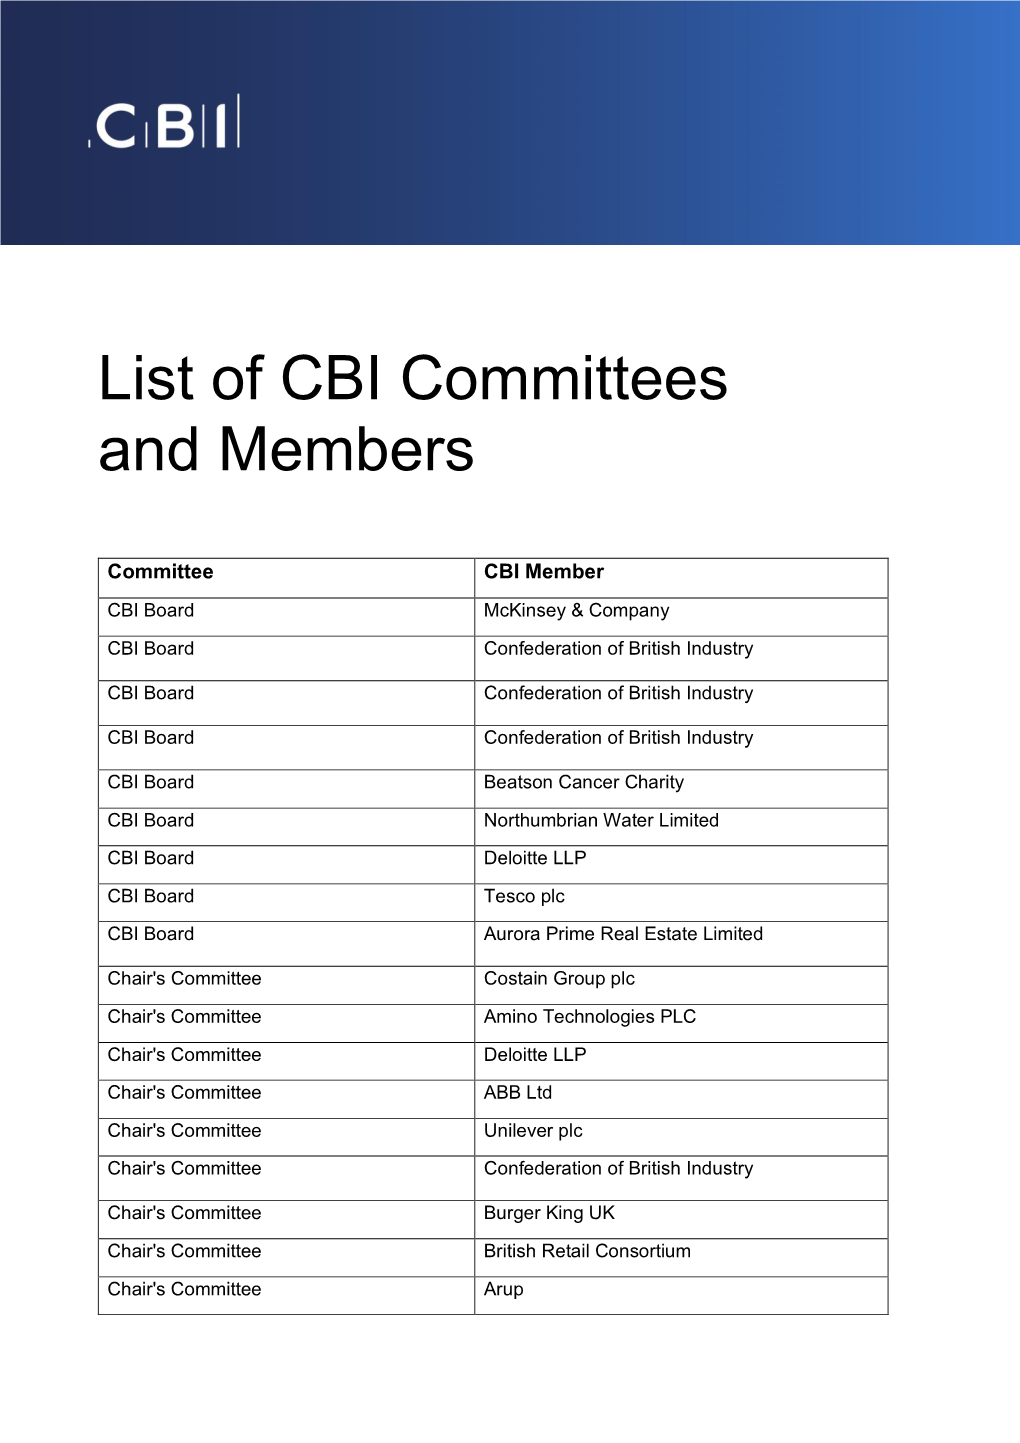 List of CBI Committees and Members